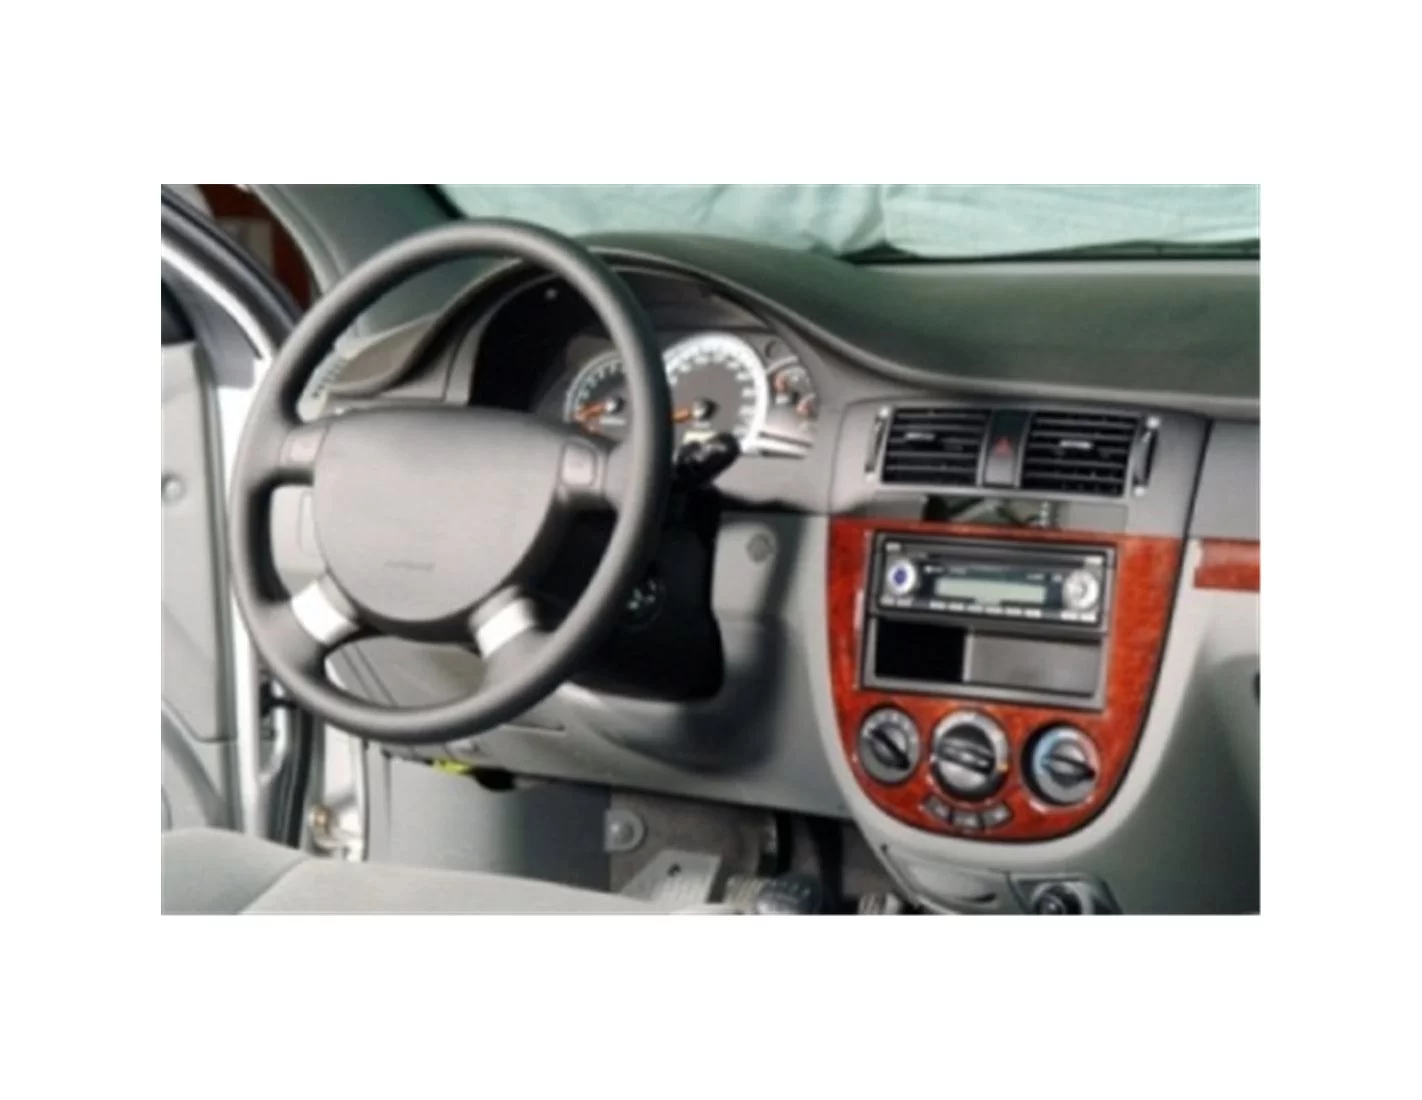 Chevrolet Lacetti HB 03.2004 3D Decor de carlinga su interior del coche 10-Partes